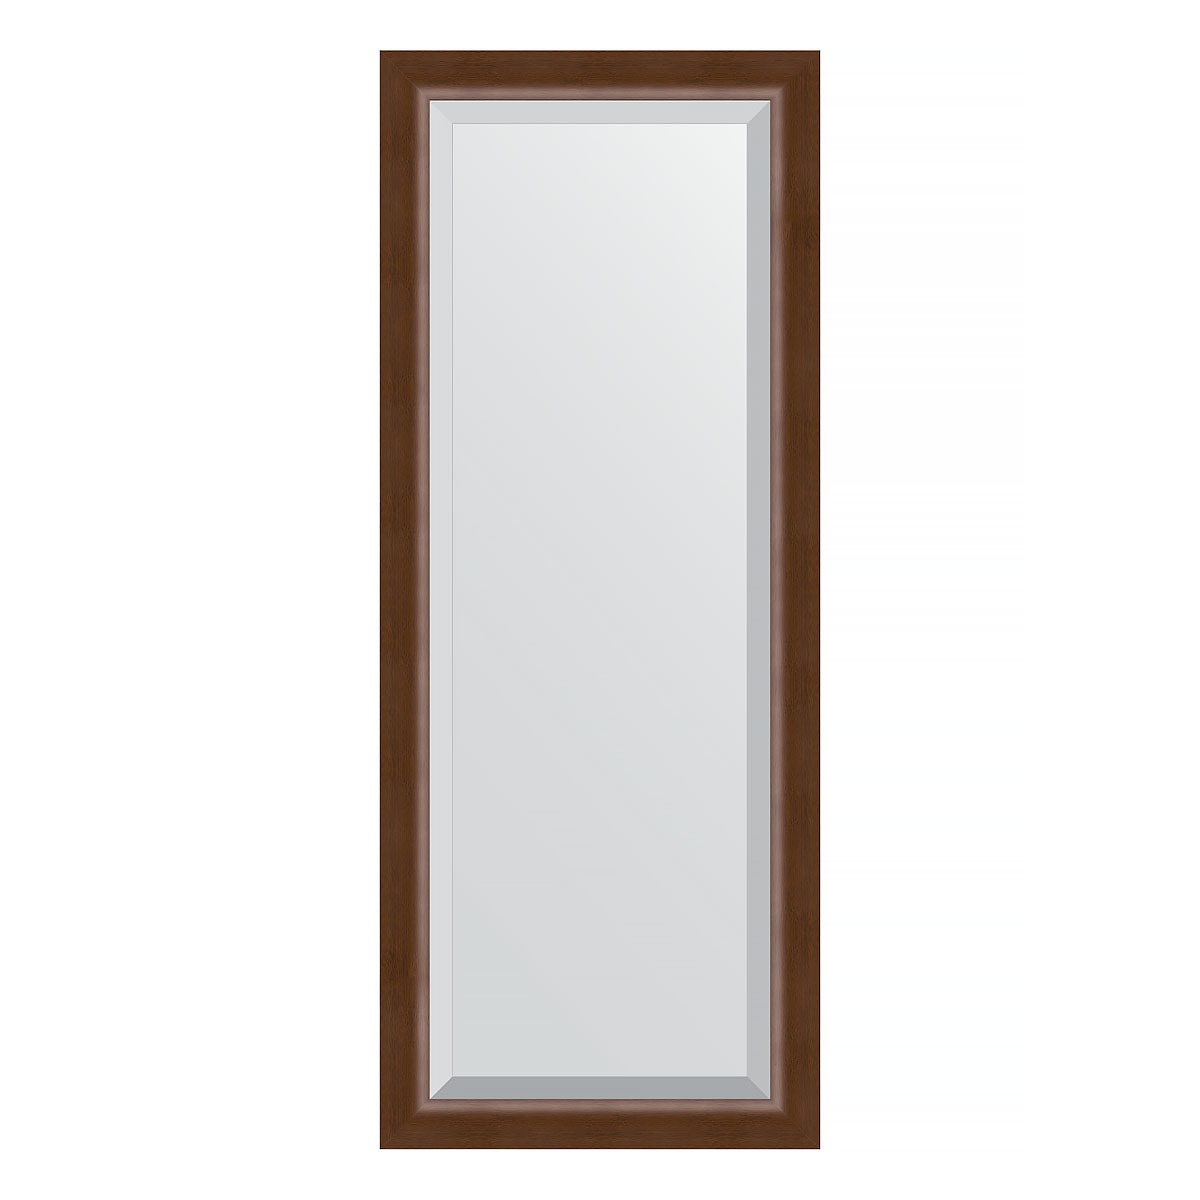 Зеркало с фацетом в багетной раме Evoform орех 65 мм 57х142 см зеркало элегант 60 110 см в раме из зеркальной мозаики для ванной